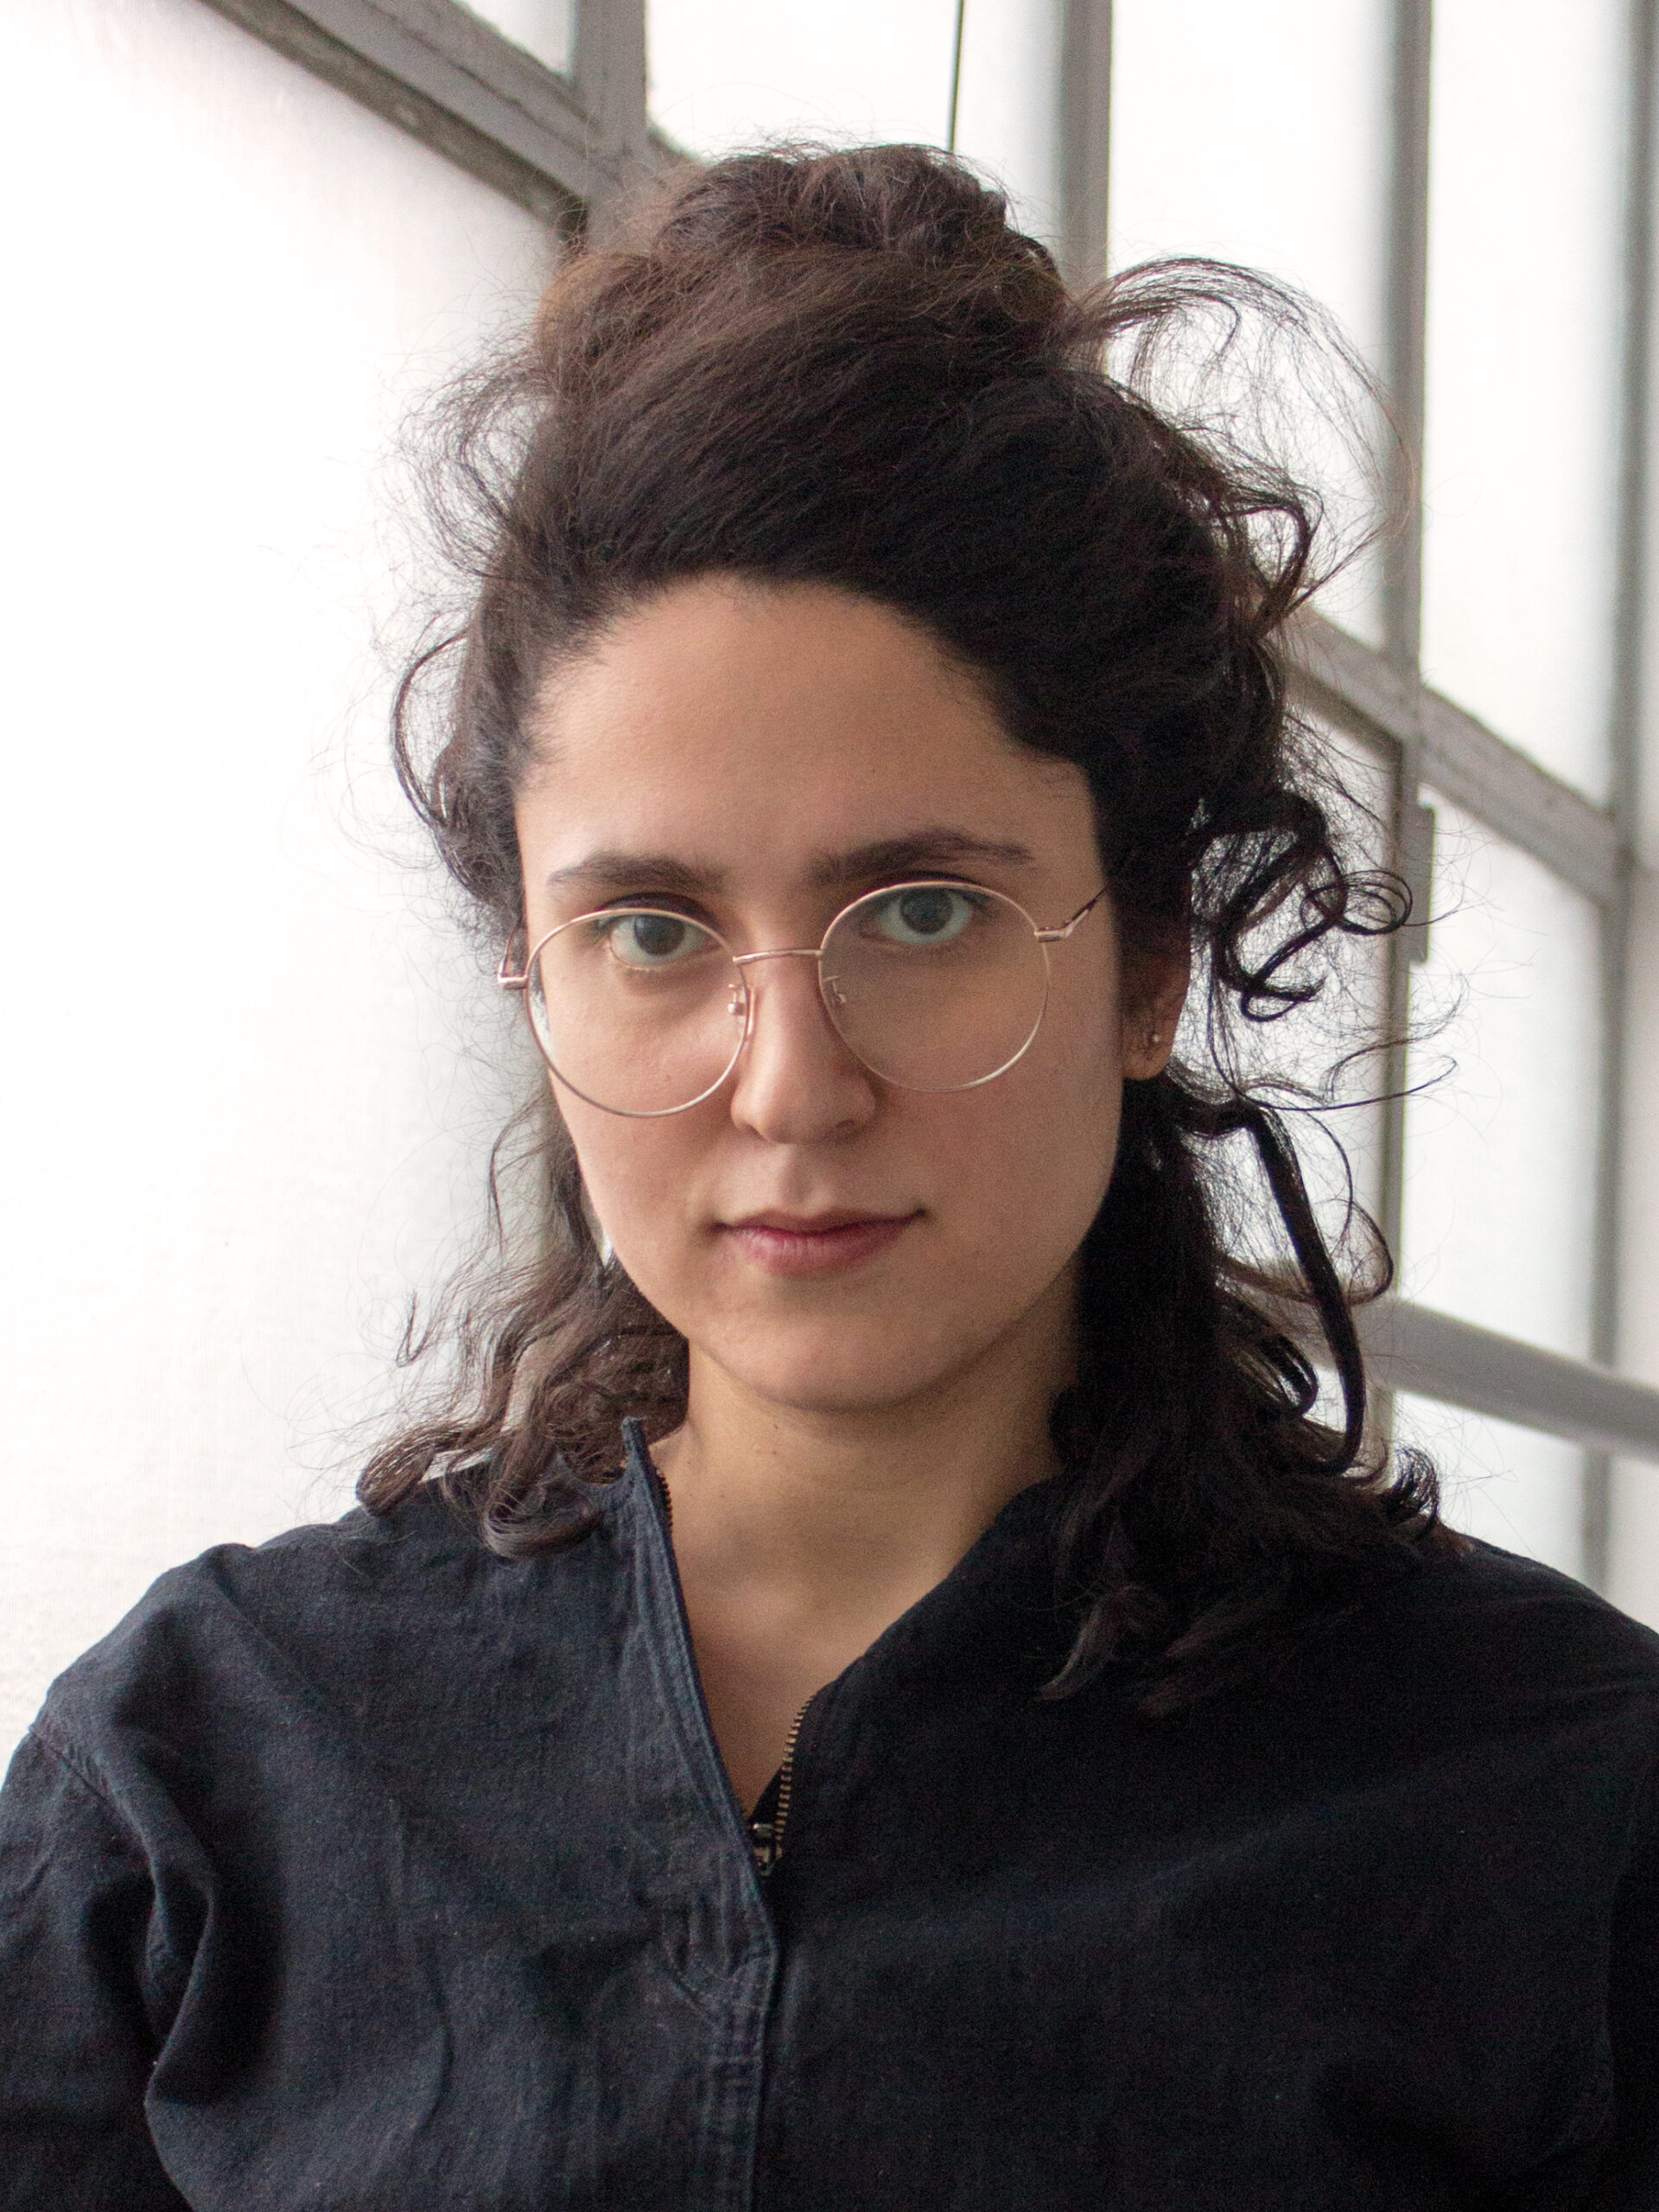 Porträtfoto von Wagehe Raufi. Die Künstlerin trägt eine Brille und schaut frontal in die Kamera.